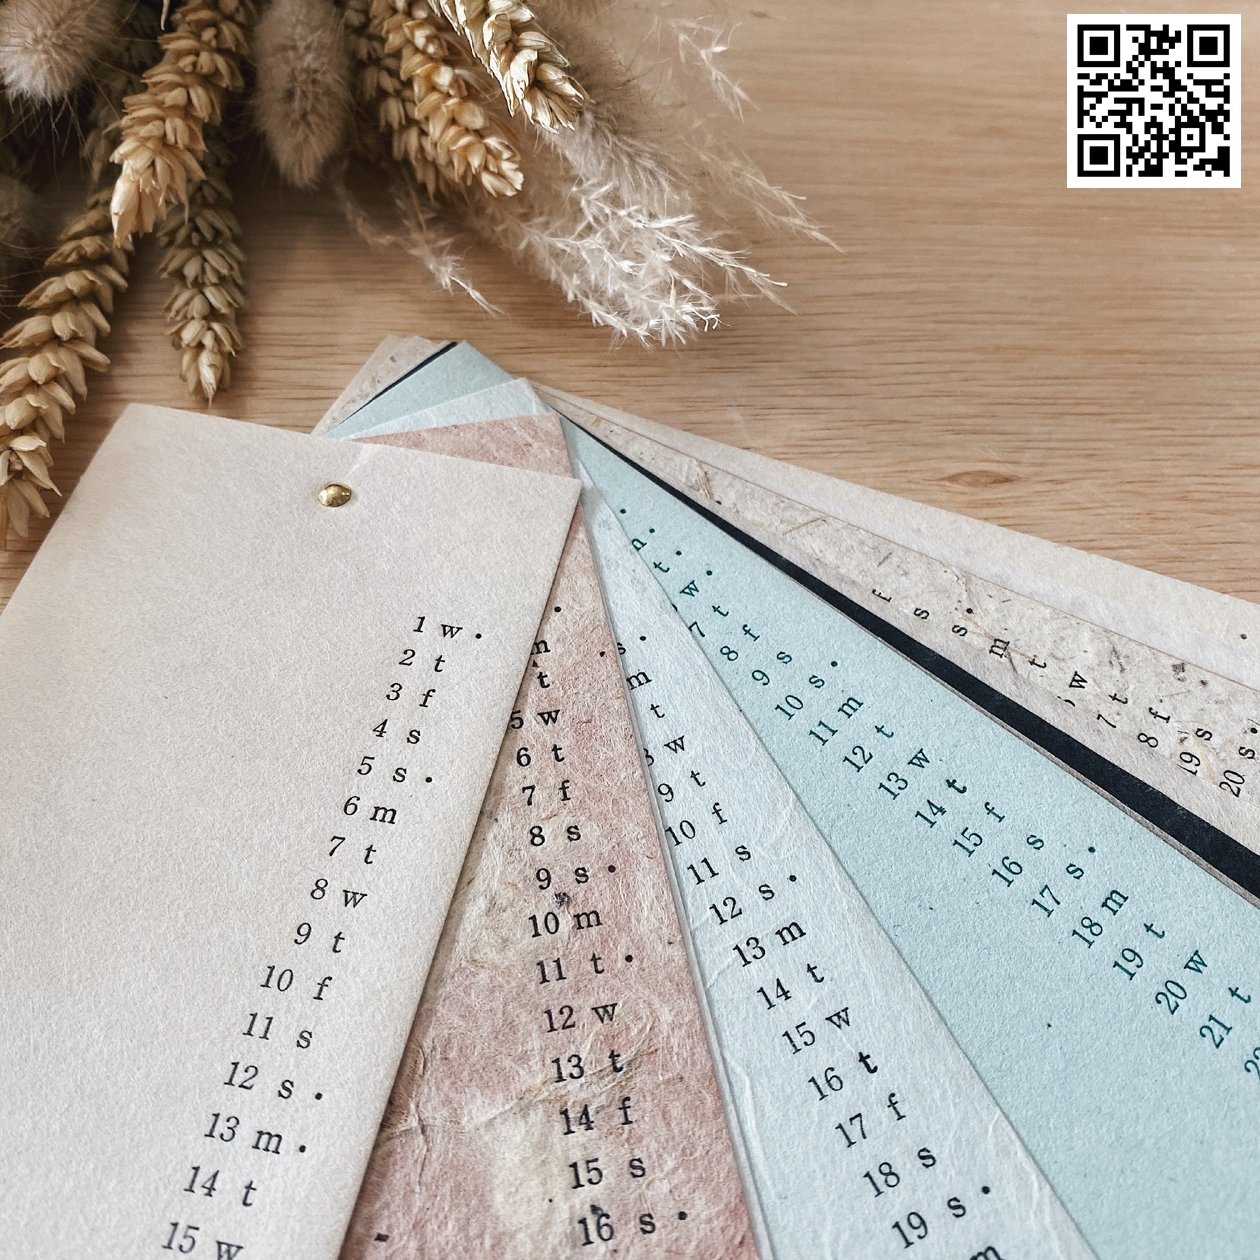 Tosawashi Calendar采用日本千年的文化遗产技术，赋予纸张新的生命。